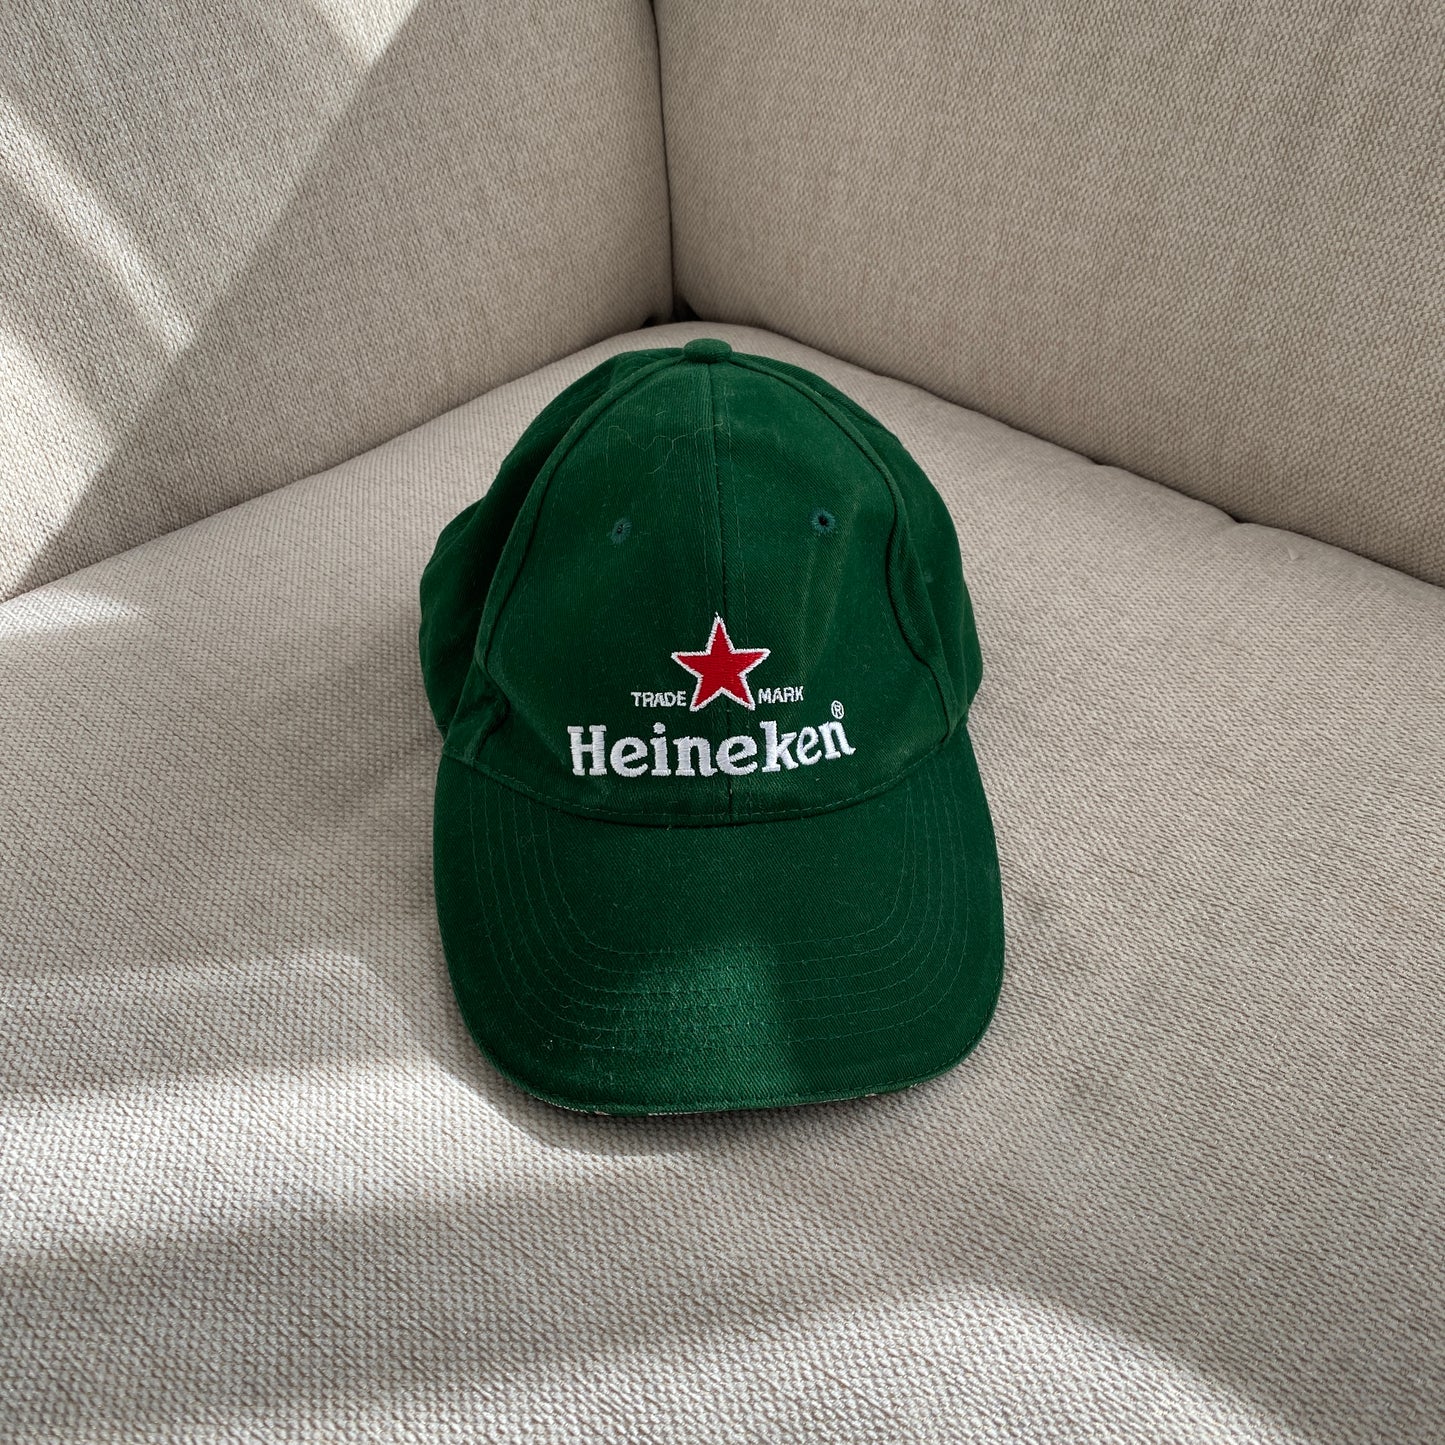 Heineken cap